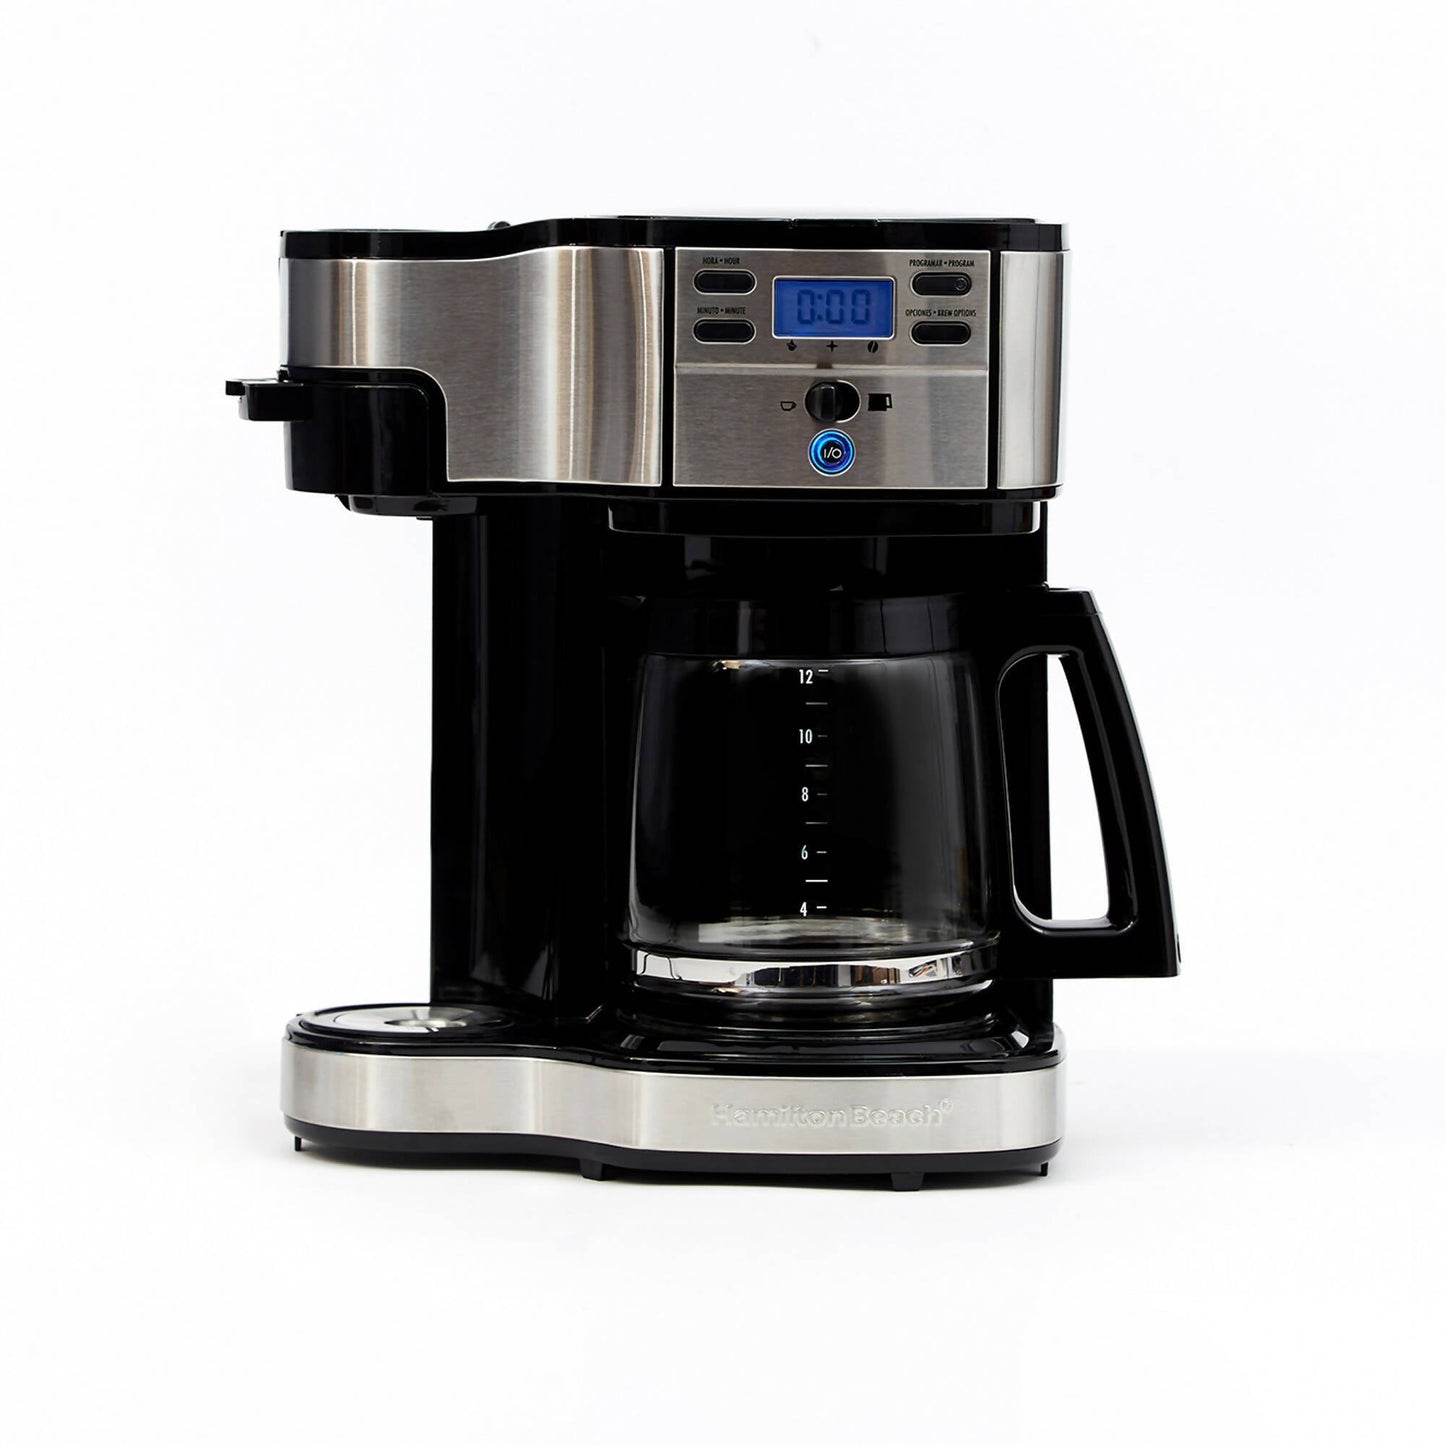 Cafetera Programable 49980-CL Doble Función Espresso + Americana Hamilton Beach11#Negro